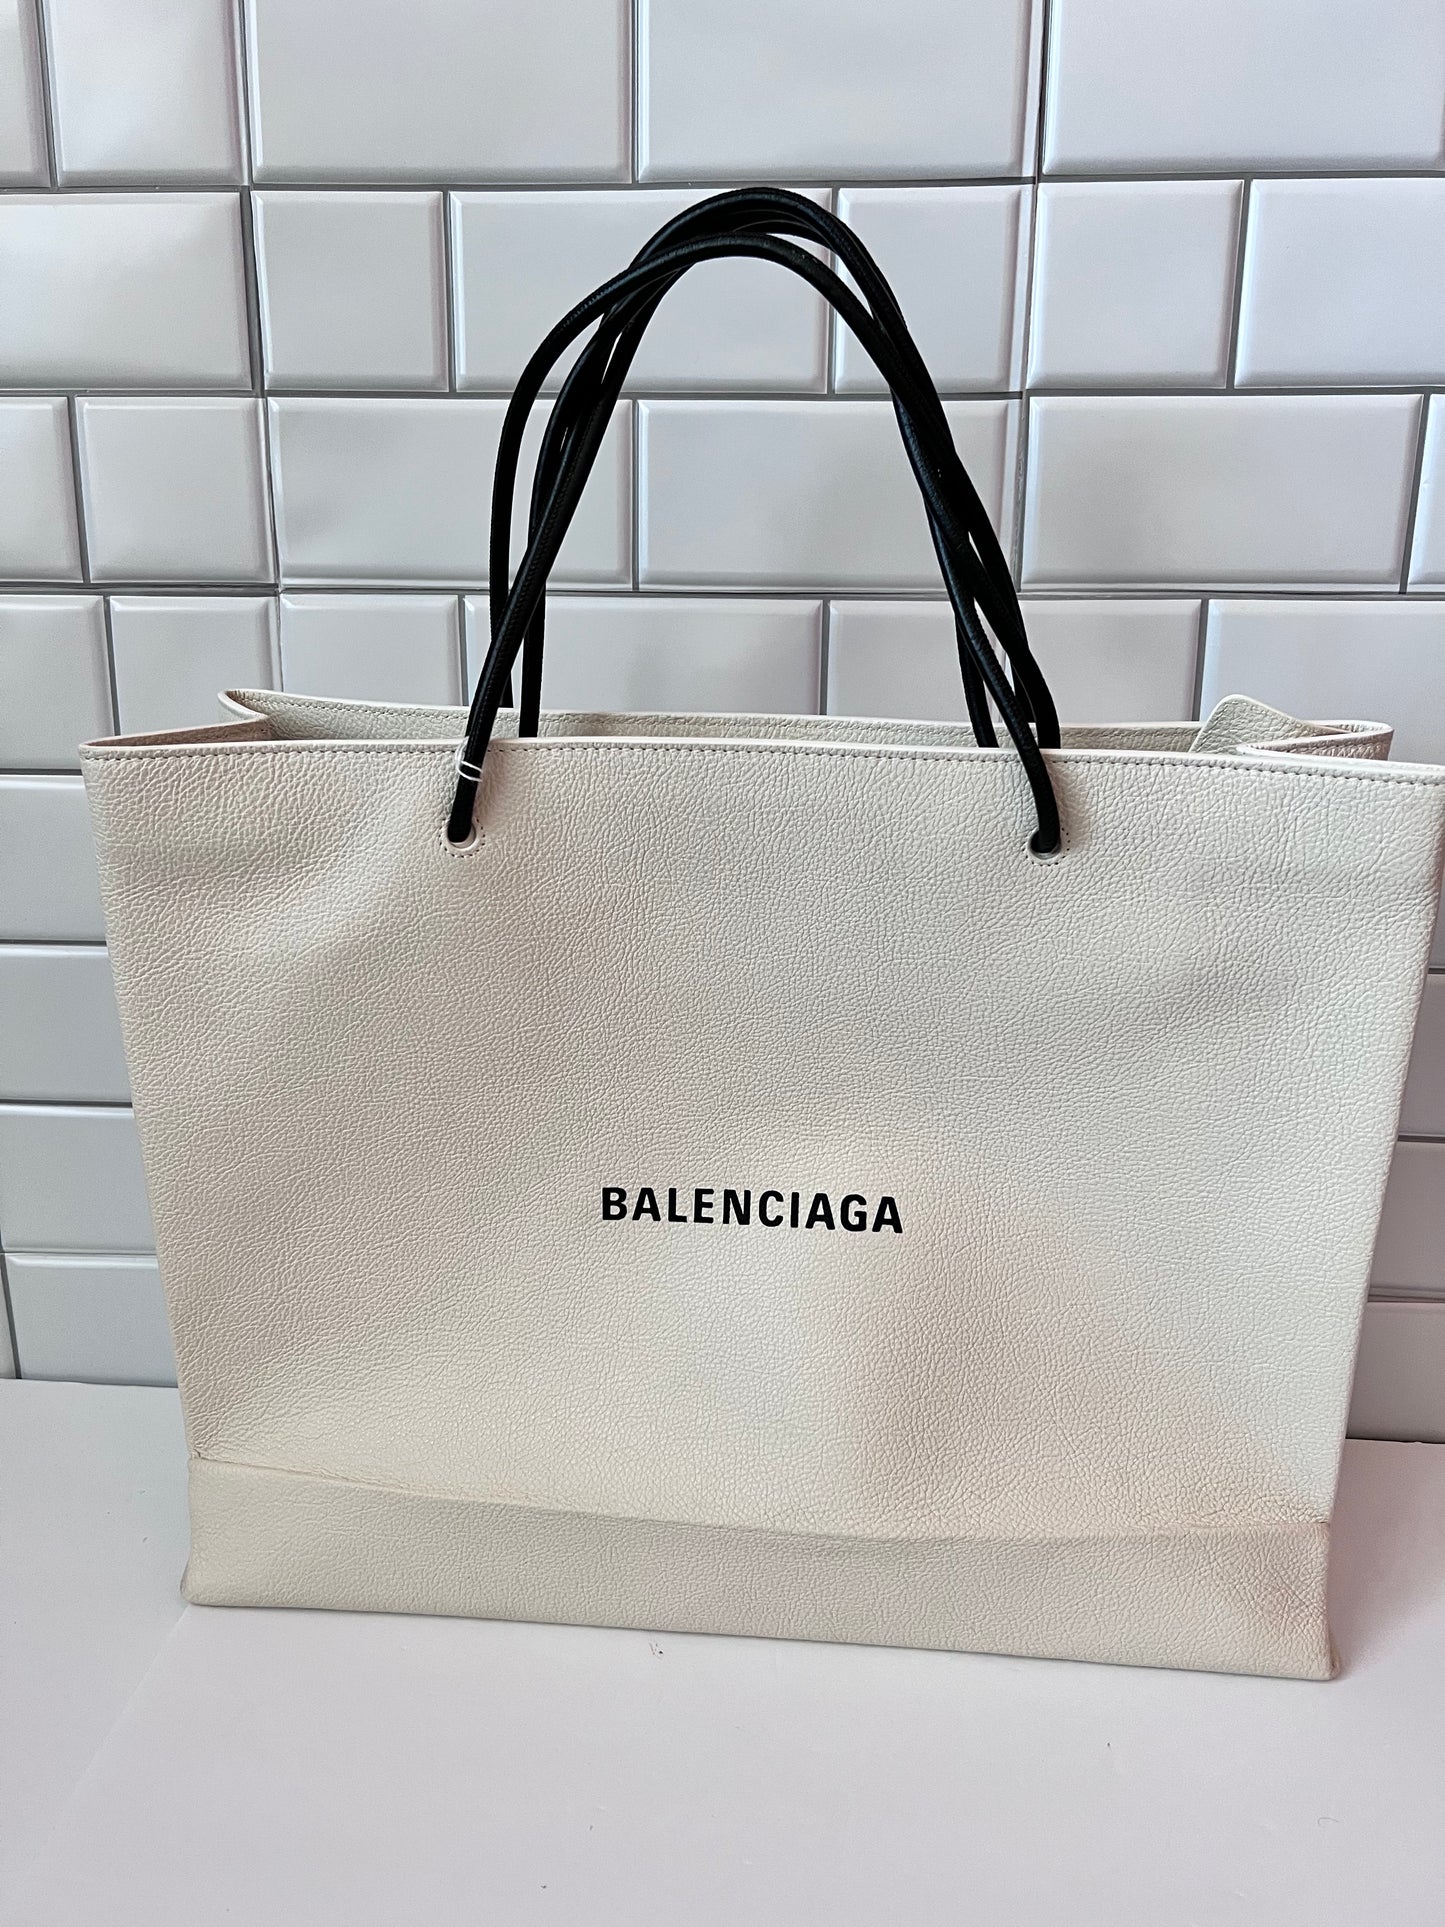 Balenciaga Shopping Bag Tote